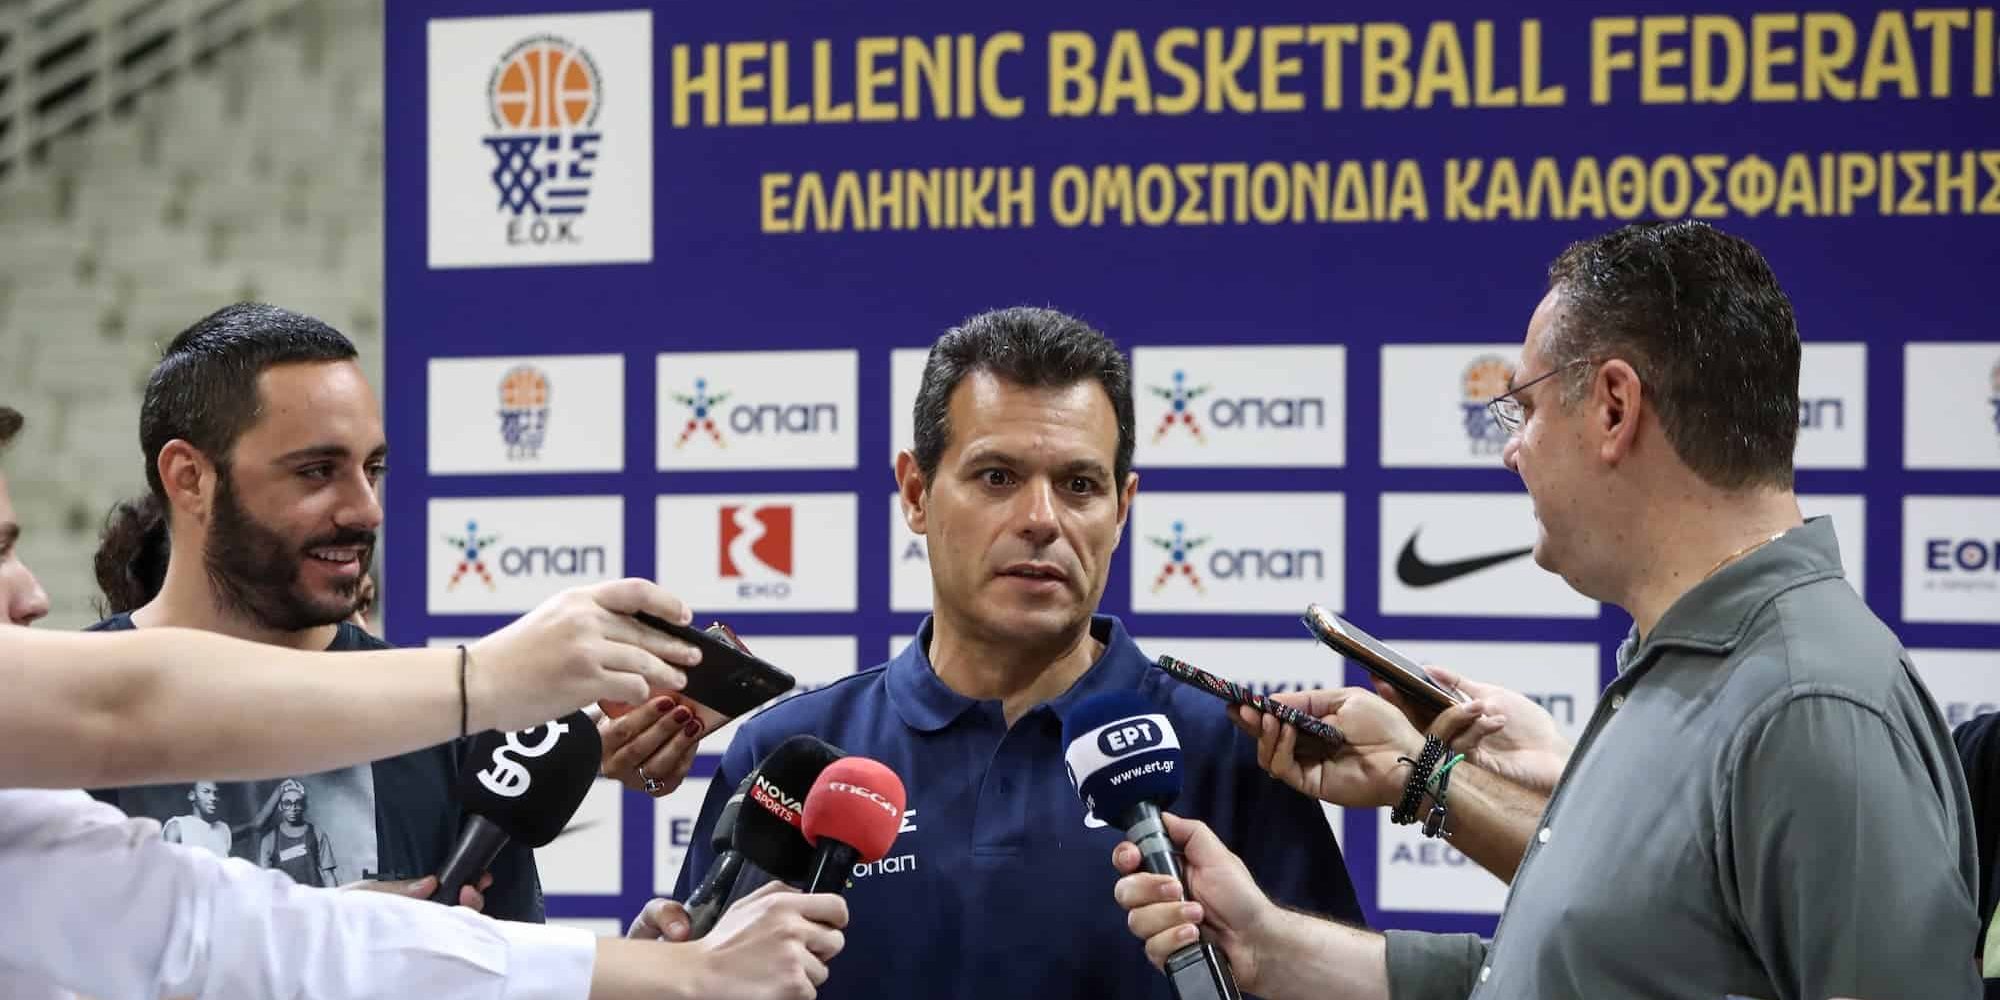 Ο Δημήτρης Ιτούδης στη media day της εθνικής μπάσκετ